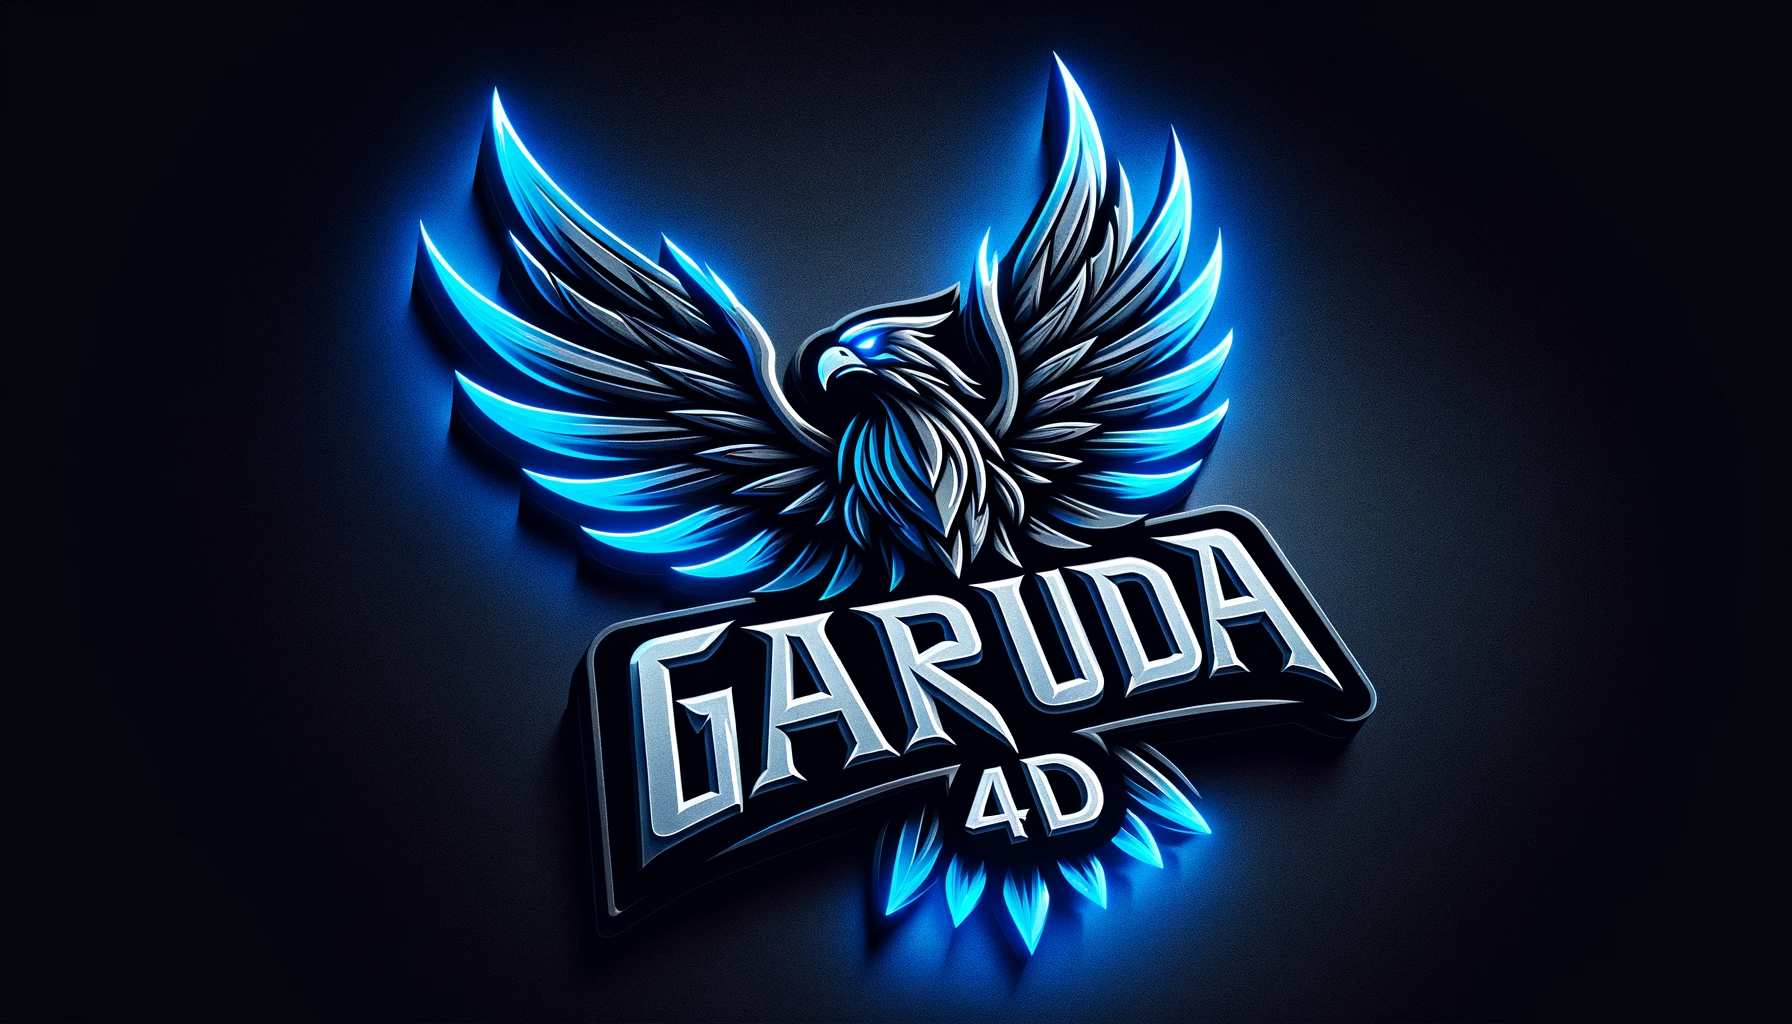 Garuda4D